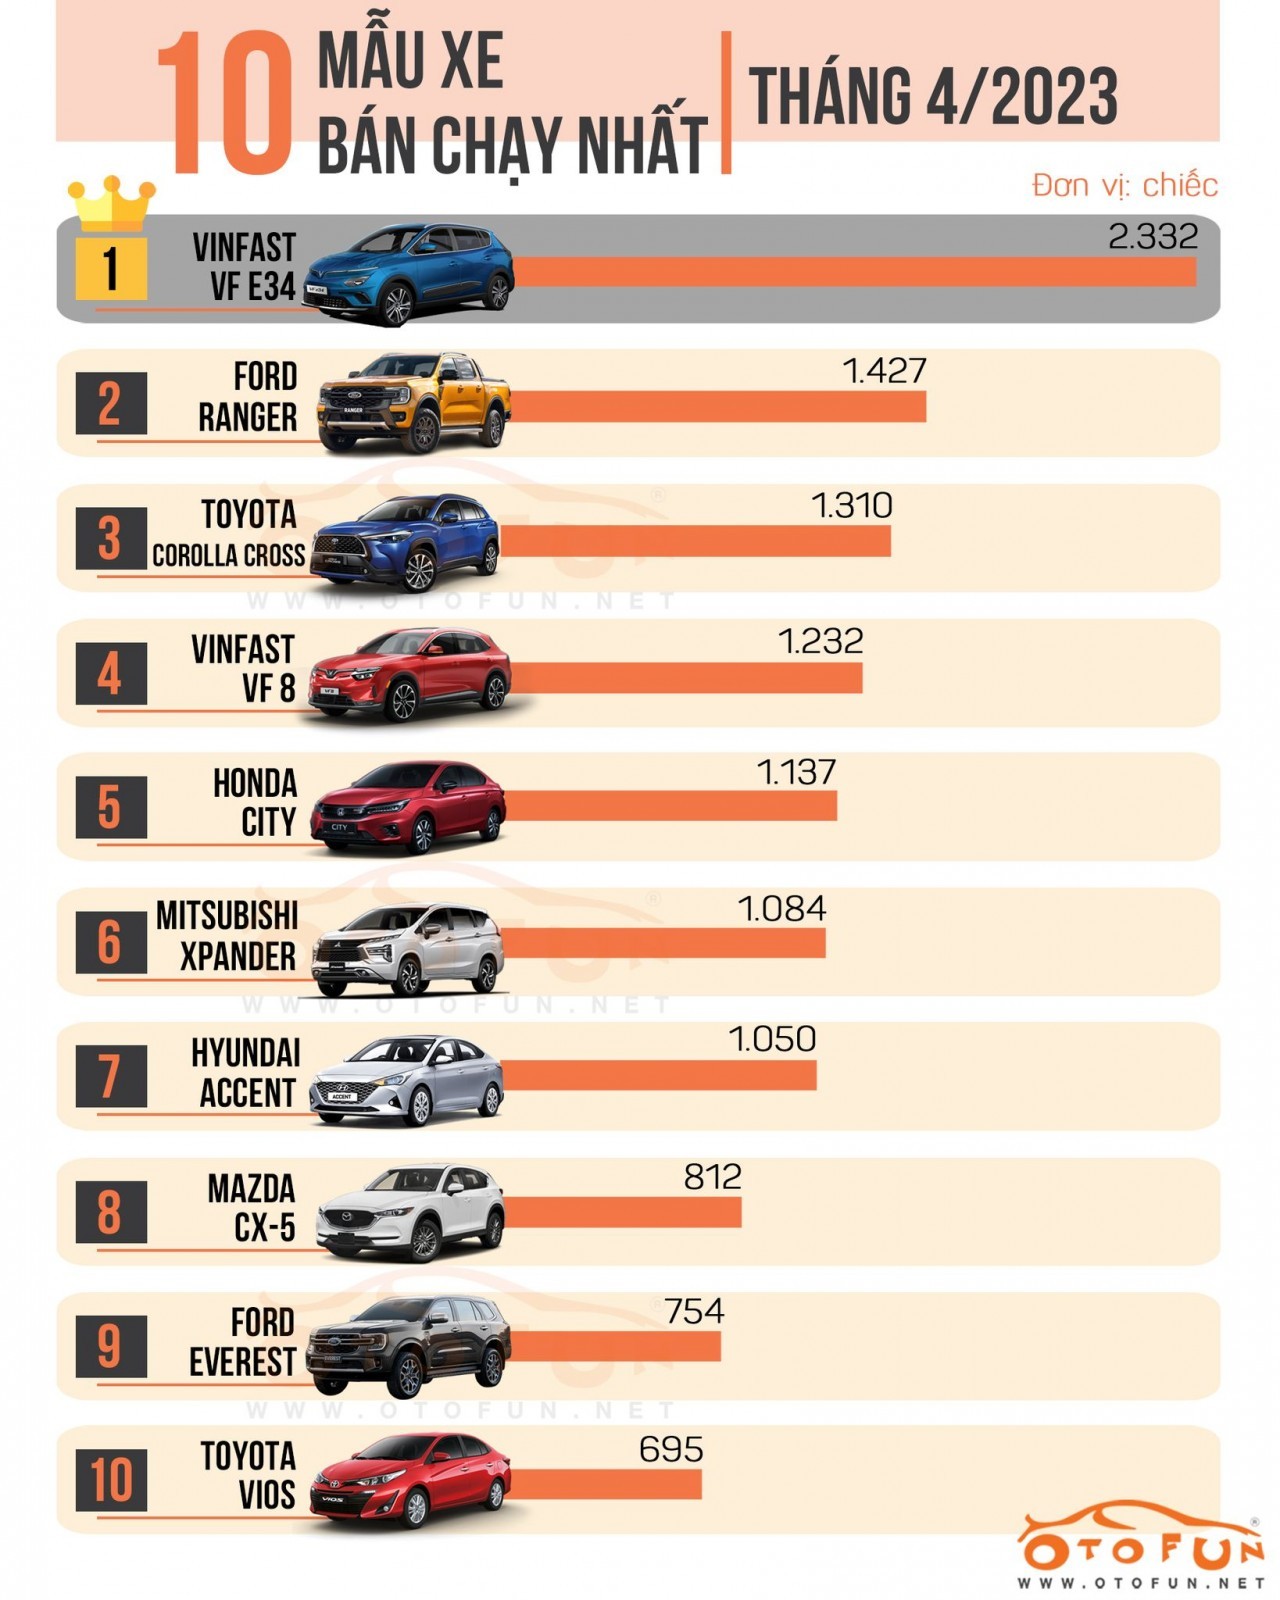 Top 10 xe ô tô bán chạy tháng 4/2023: